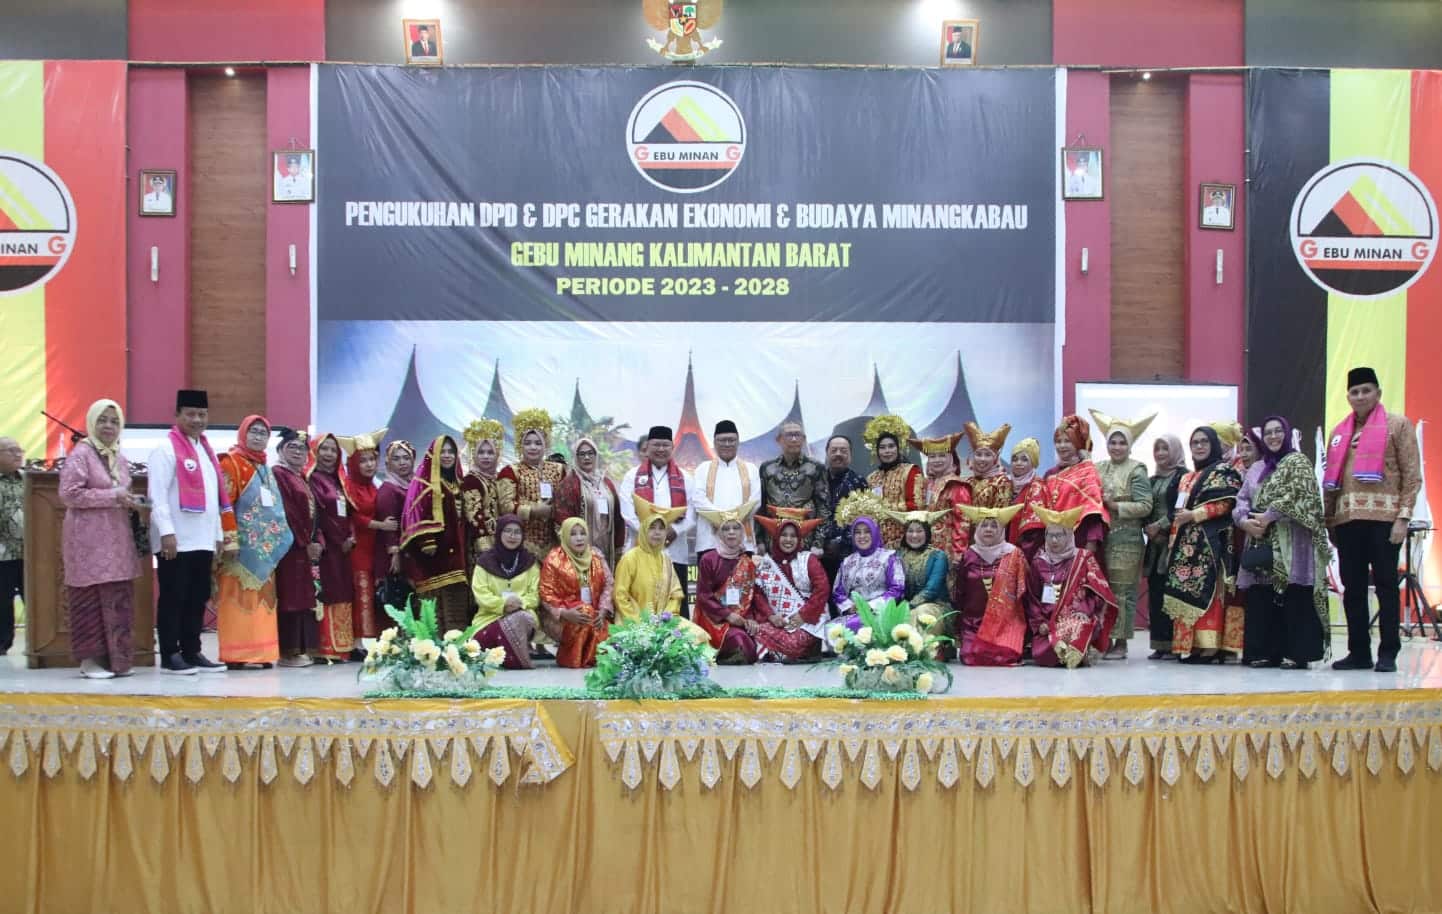 Foto bersama dalam acara Pengukuhan DPD dan DPC Gerakan Ekonomi dan Budaya Minangkabau (Gebu Minang) Provinsi Kalimantan Barat Periode 2023 - 2028, di Balai Batomu Kabupaten Sanggau, Sabtu (12/8/2023) malam. (Foto: Biro Adpim For KalbarOnline.com)